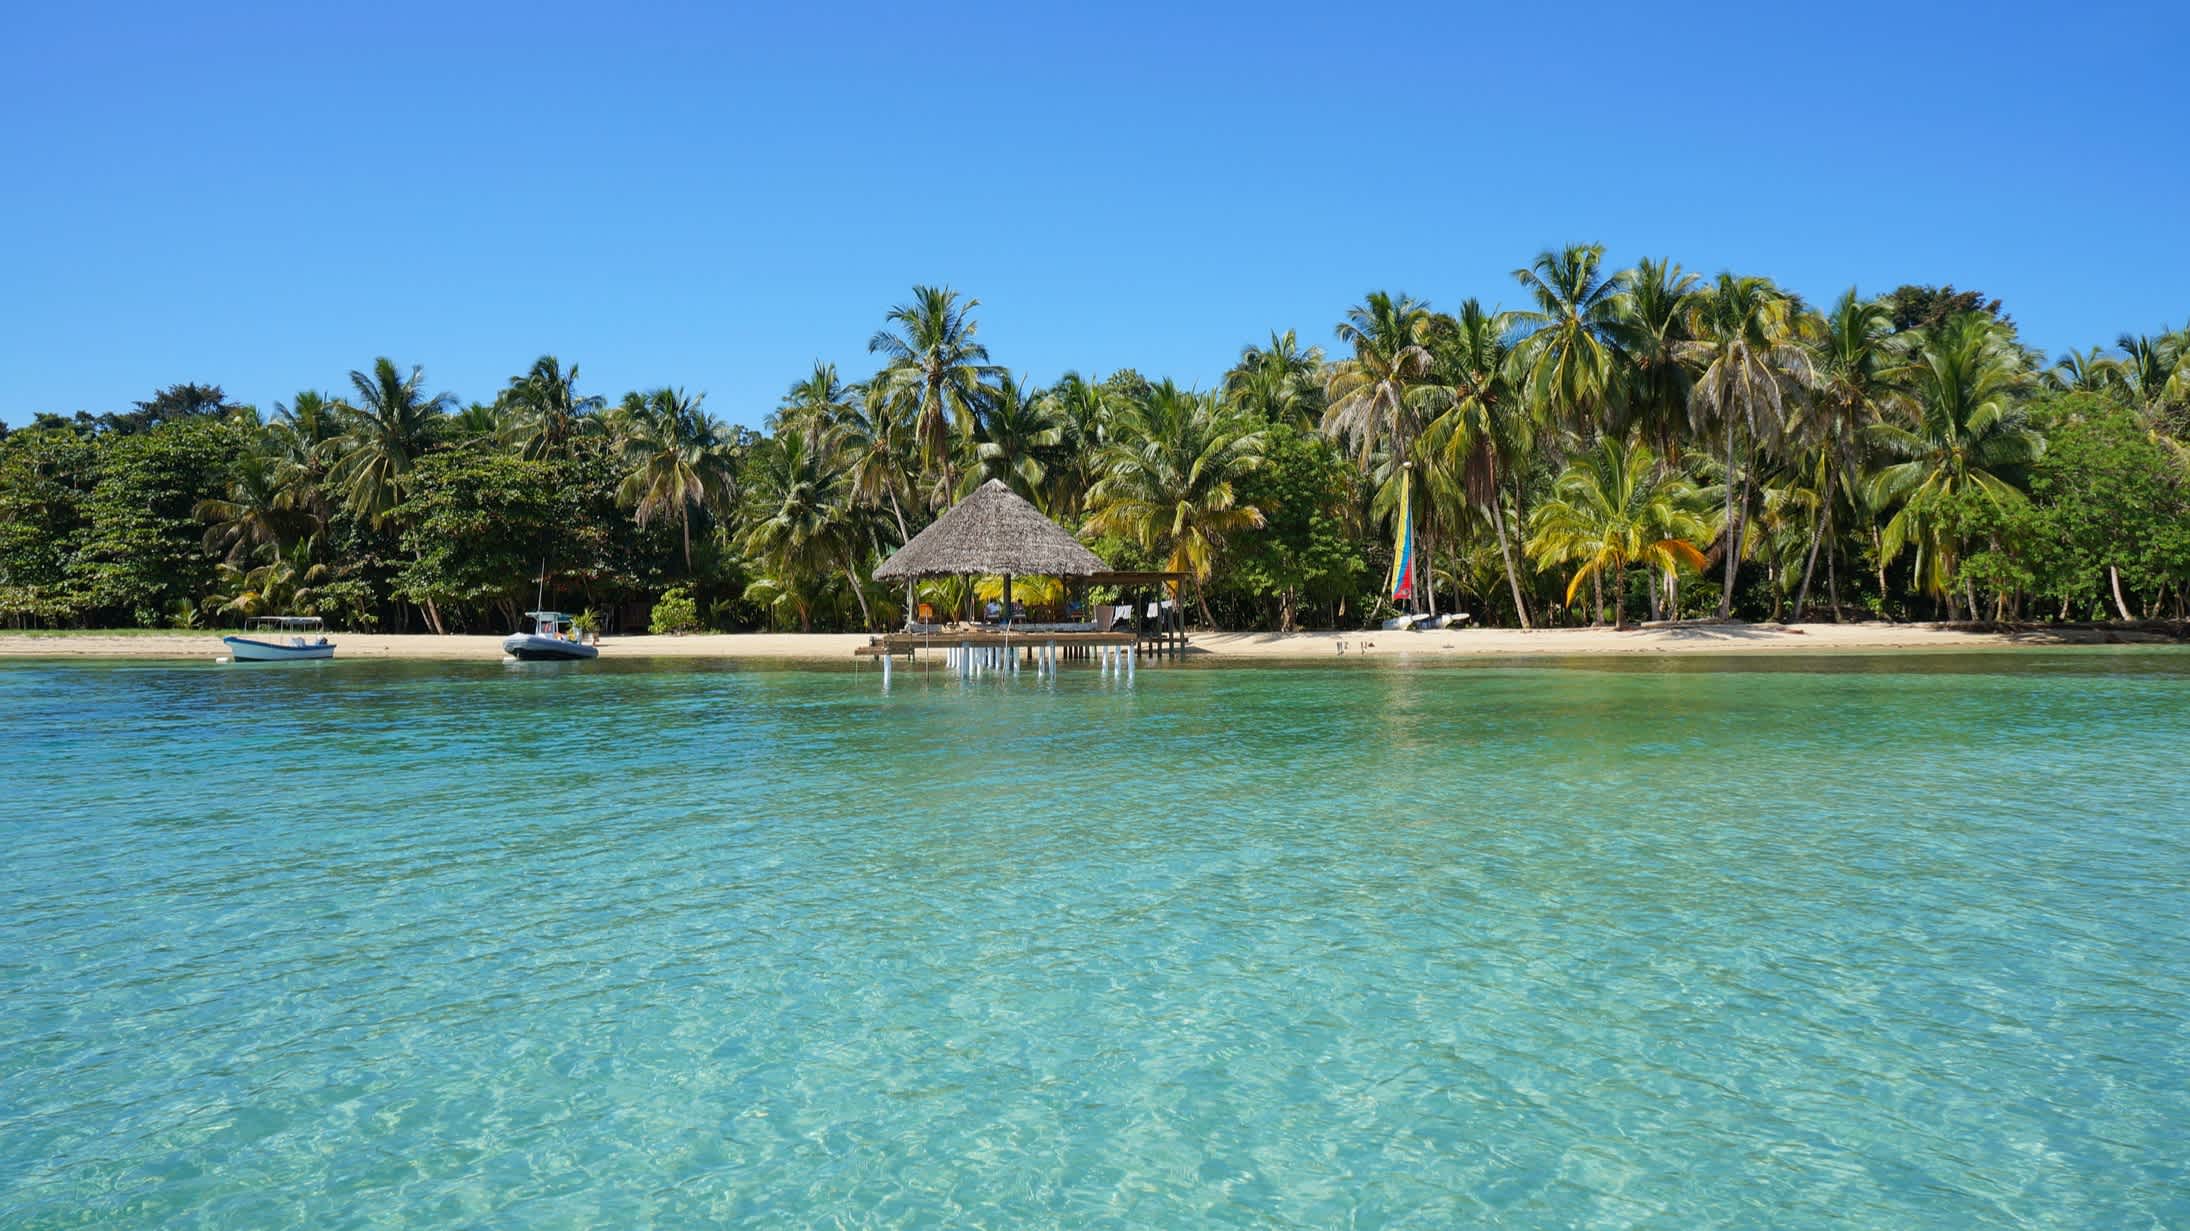 Tropische Küste mit Kokosnusspalmen und einer Palapa über dem Wasser, Bocas del Toro, Karibisches Meer, Panama